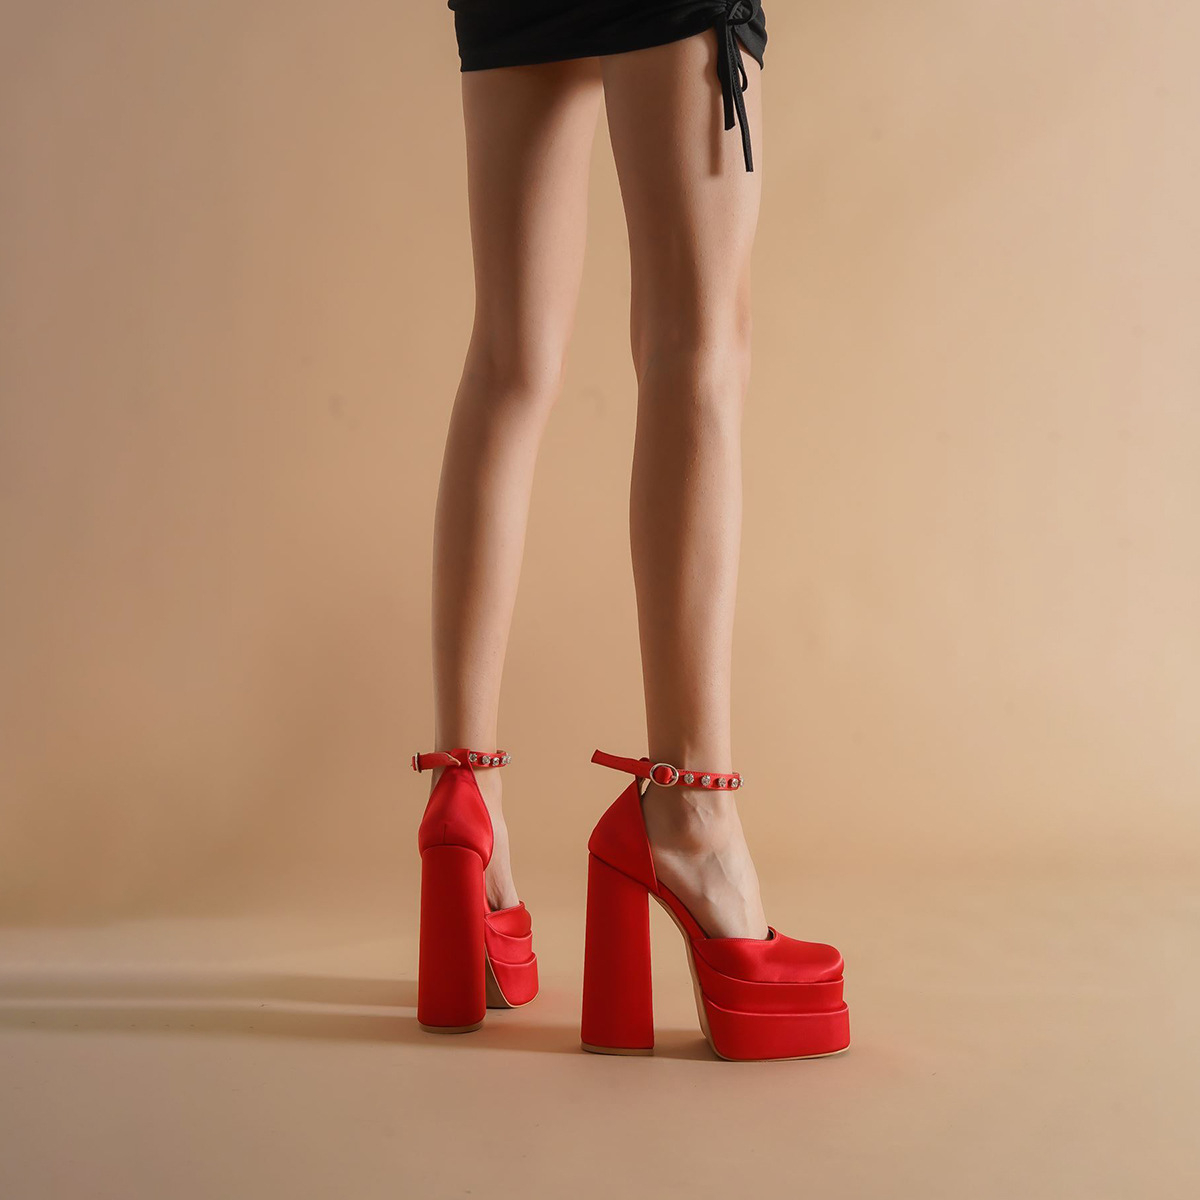 Klädskor klackar hänglås spetsig naken sandal spetsig tå form skor kvinna designer spänne ankel rem band klackar sandaler sandaler